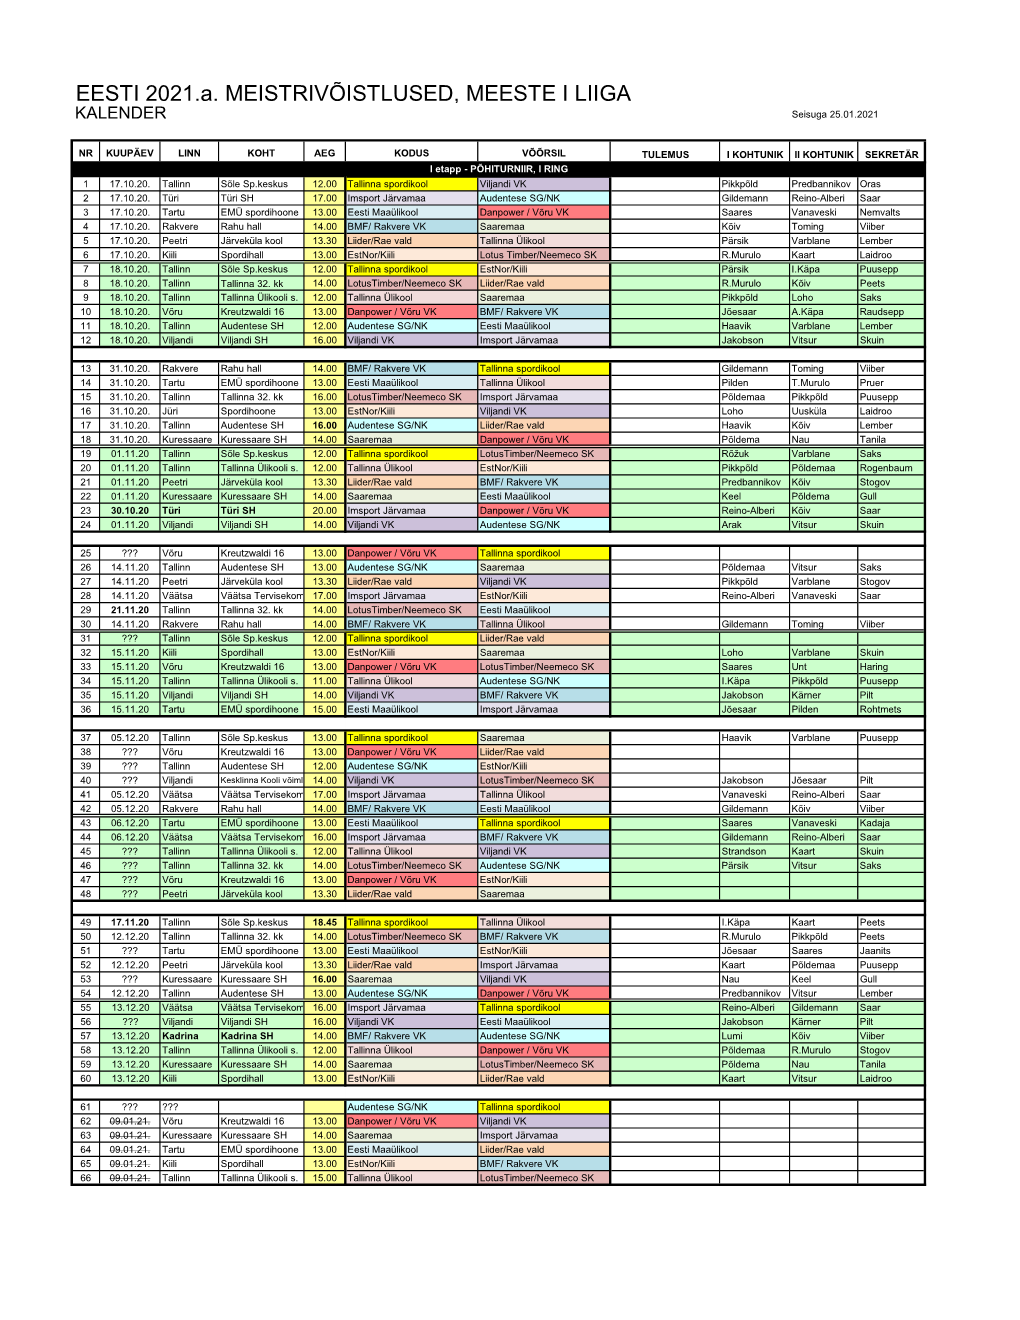 Meeste I Liiga Kalender 2020-2021 (25.01.21)